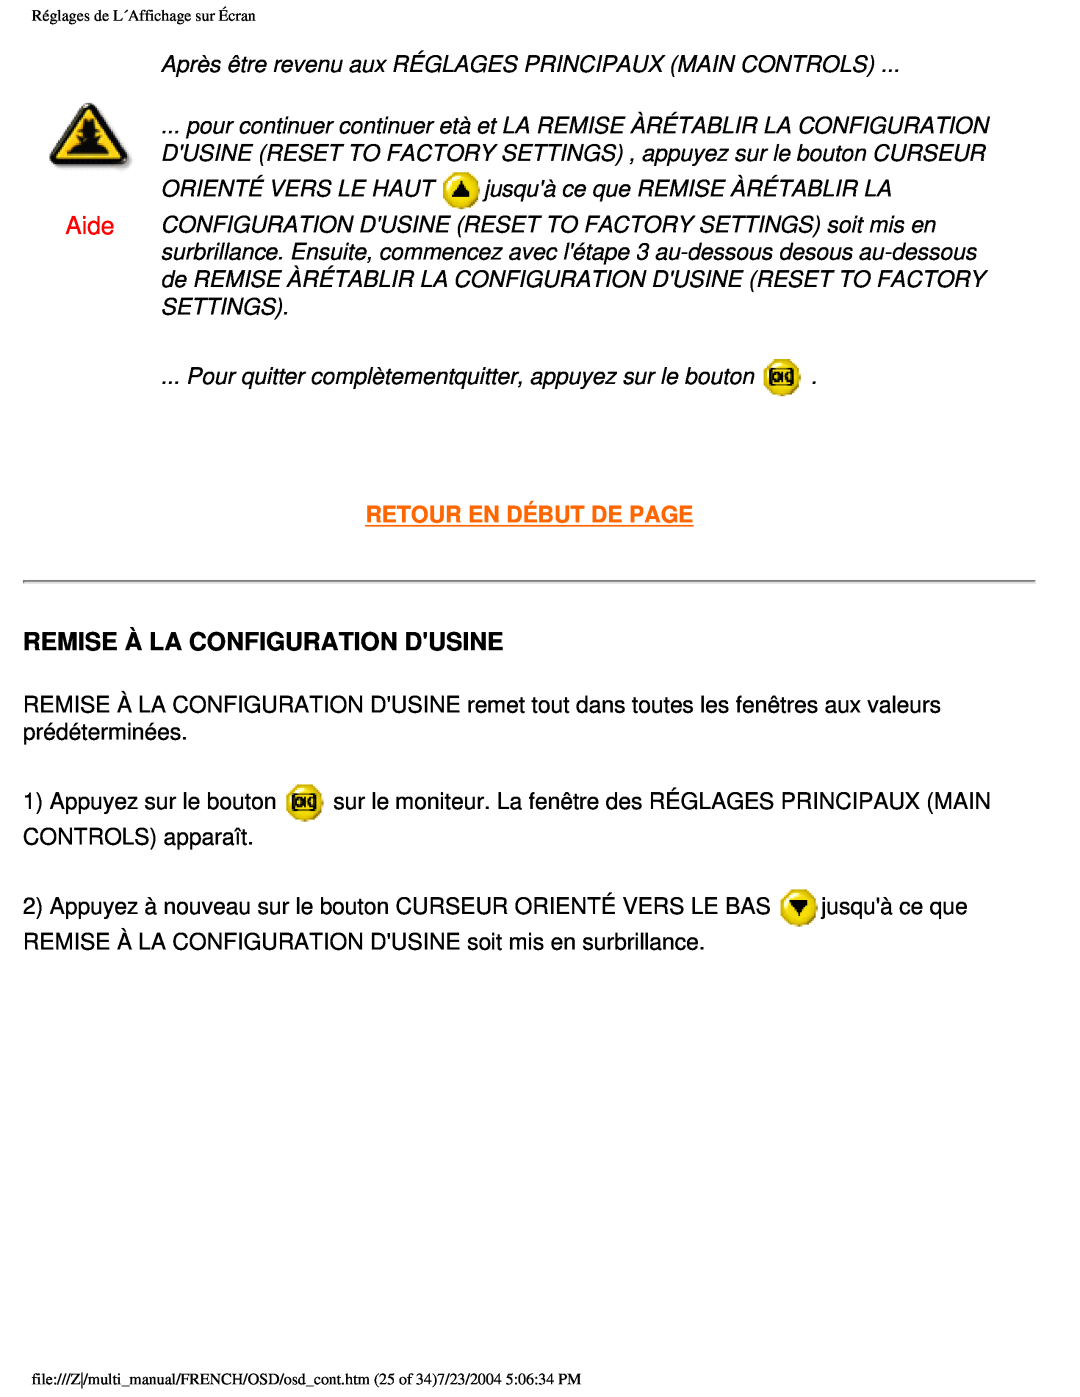 Philips 107B3 user manual Remise À La Configuration Dusine, Retour En Début De Page 